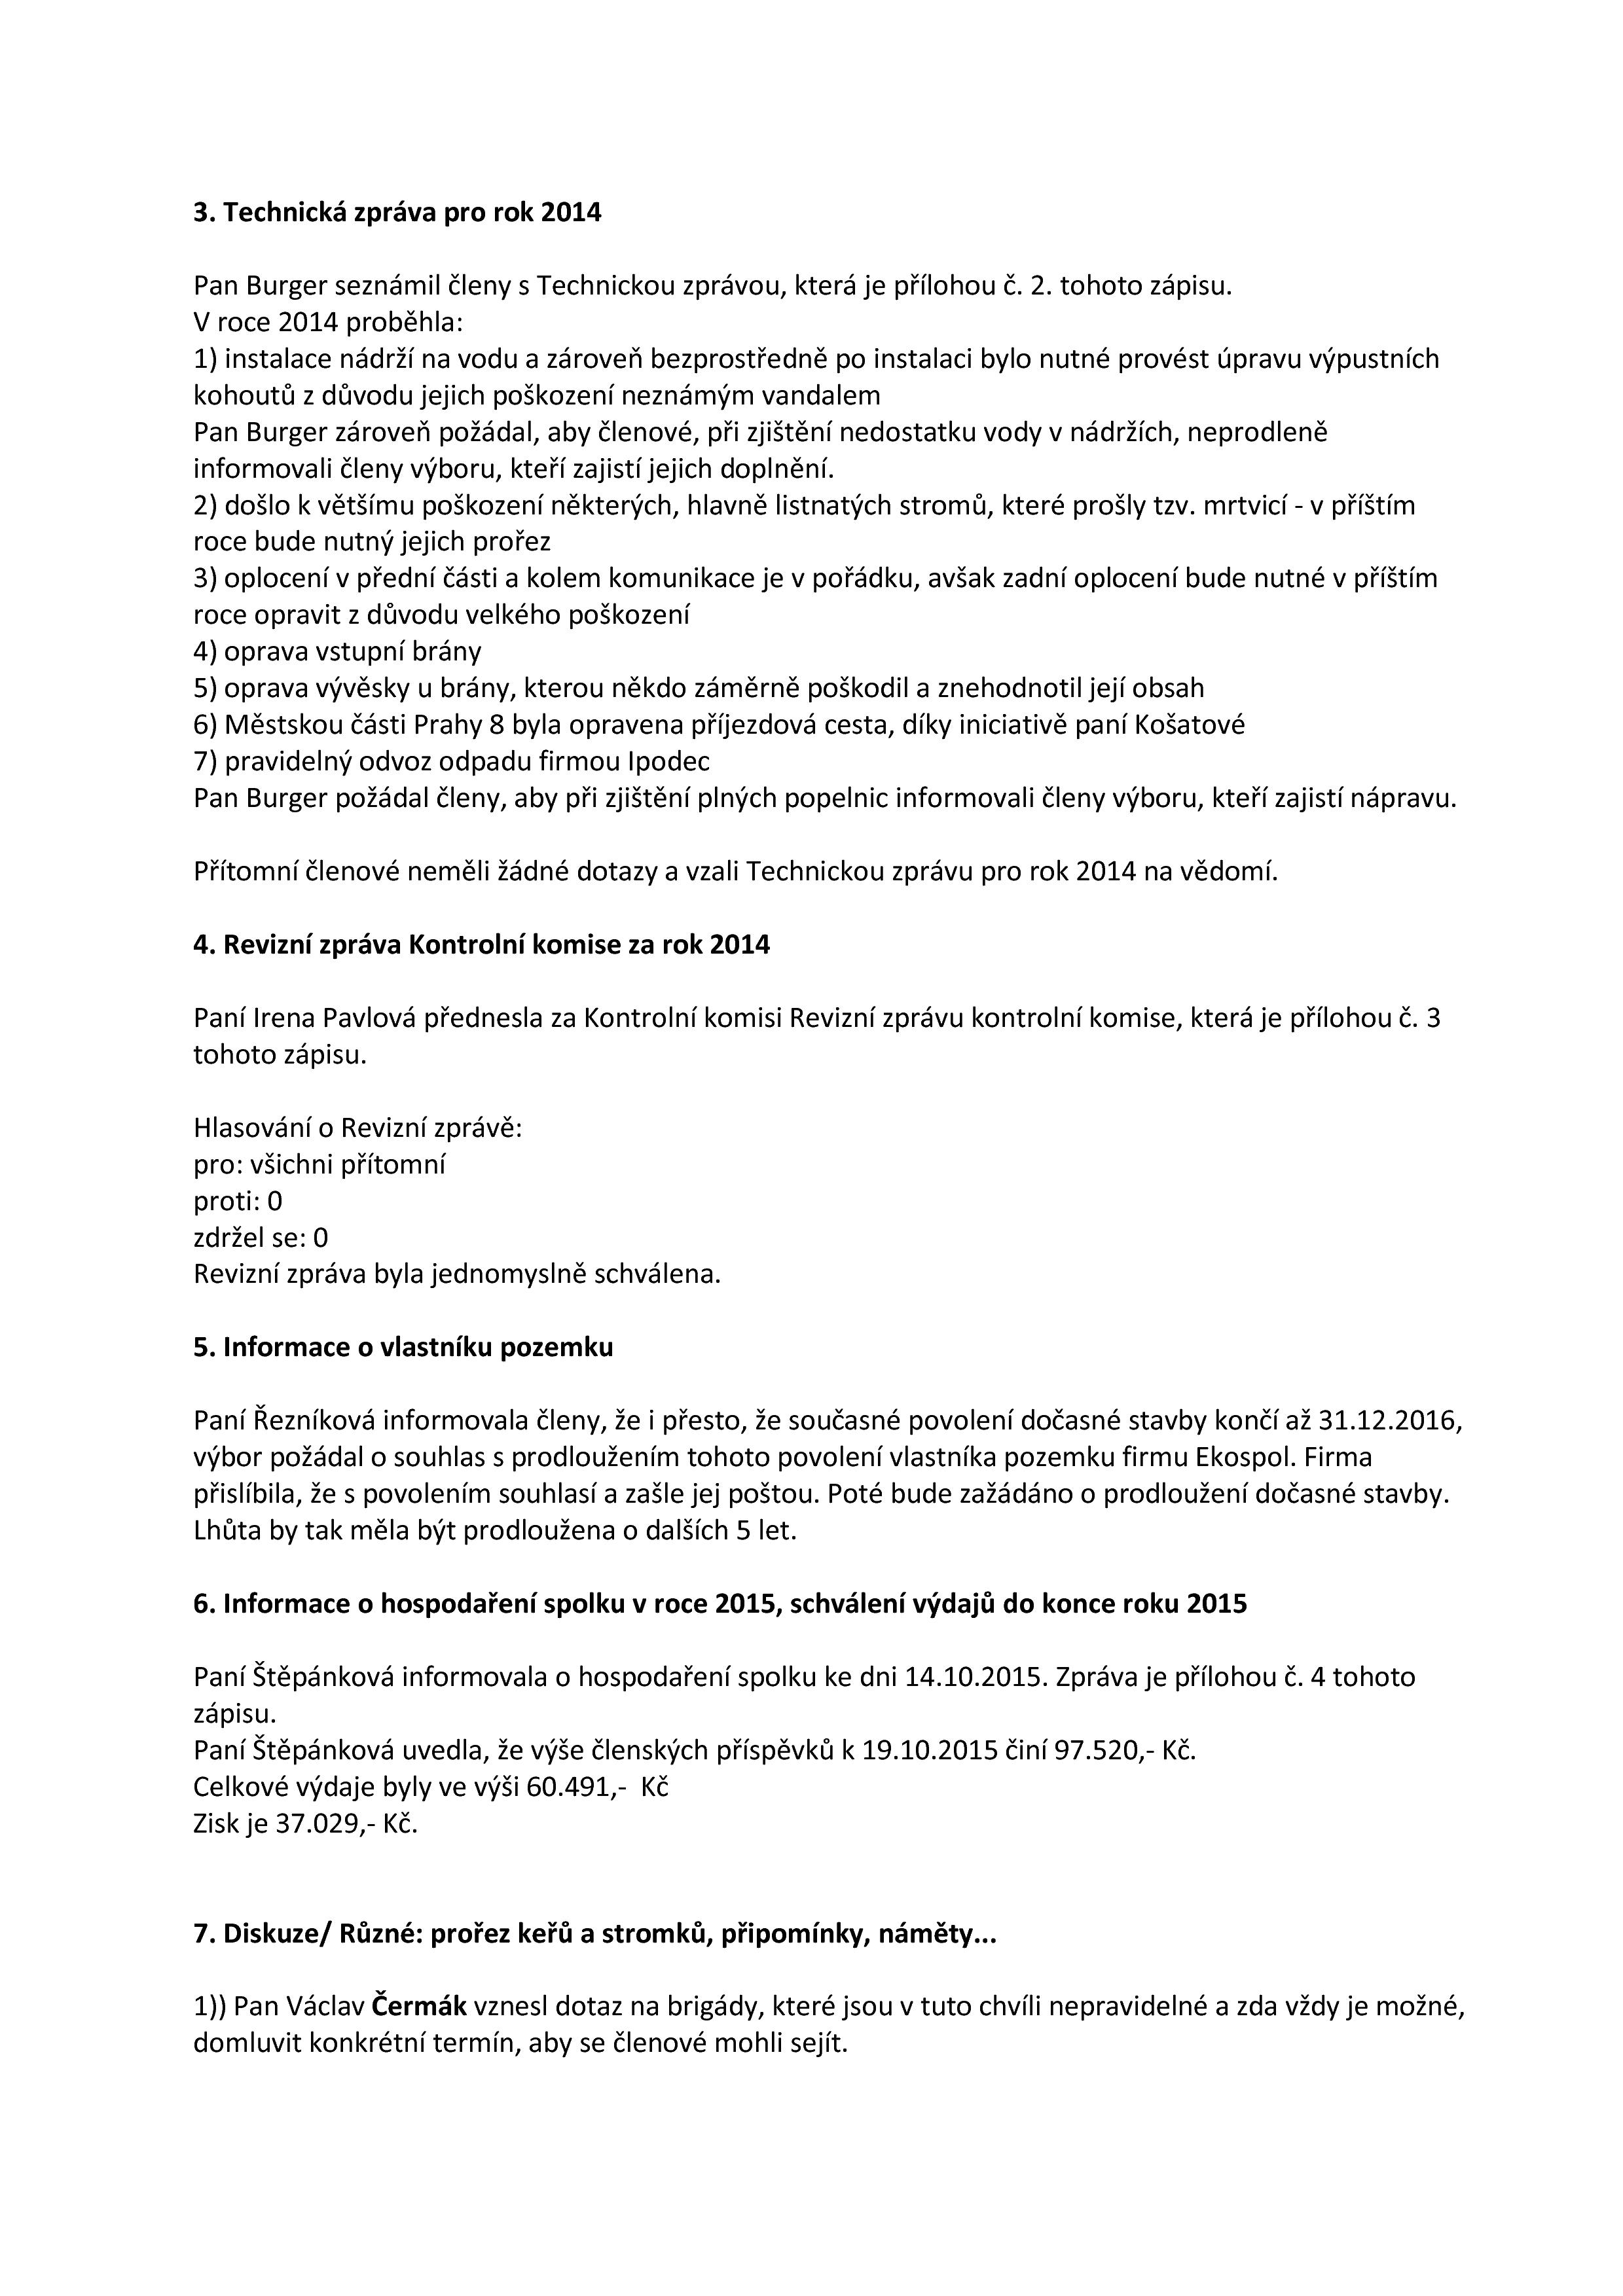 vyrocni-clenska-schuze-spolku-os-ppp_22102015-page-002.jpg